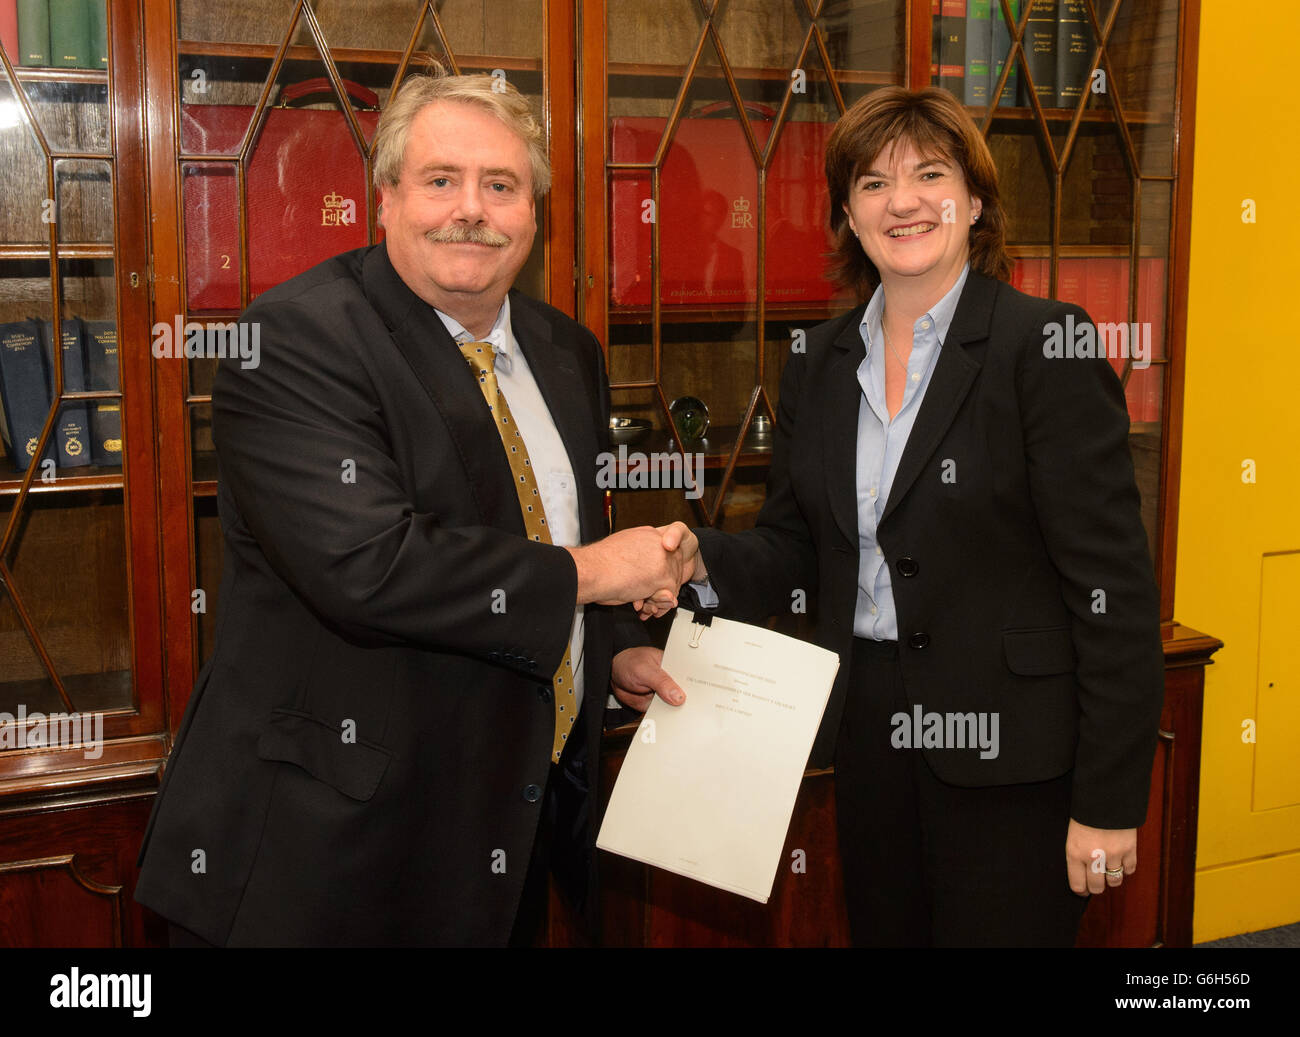 Il Segretario economico al Tesoro Nicky Morgan (destra) presenta una demissione firmata al Vice Presidente tecnico di Shell Glen Cayley, presso HM Treasury, a Westminster, nel centro di Londra. Foto Stock